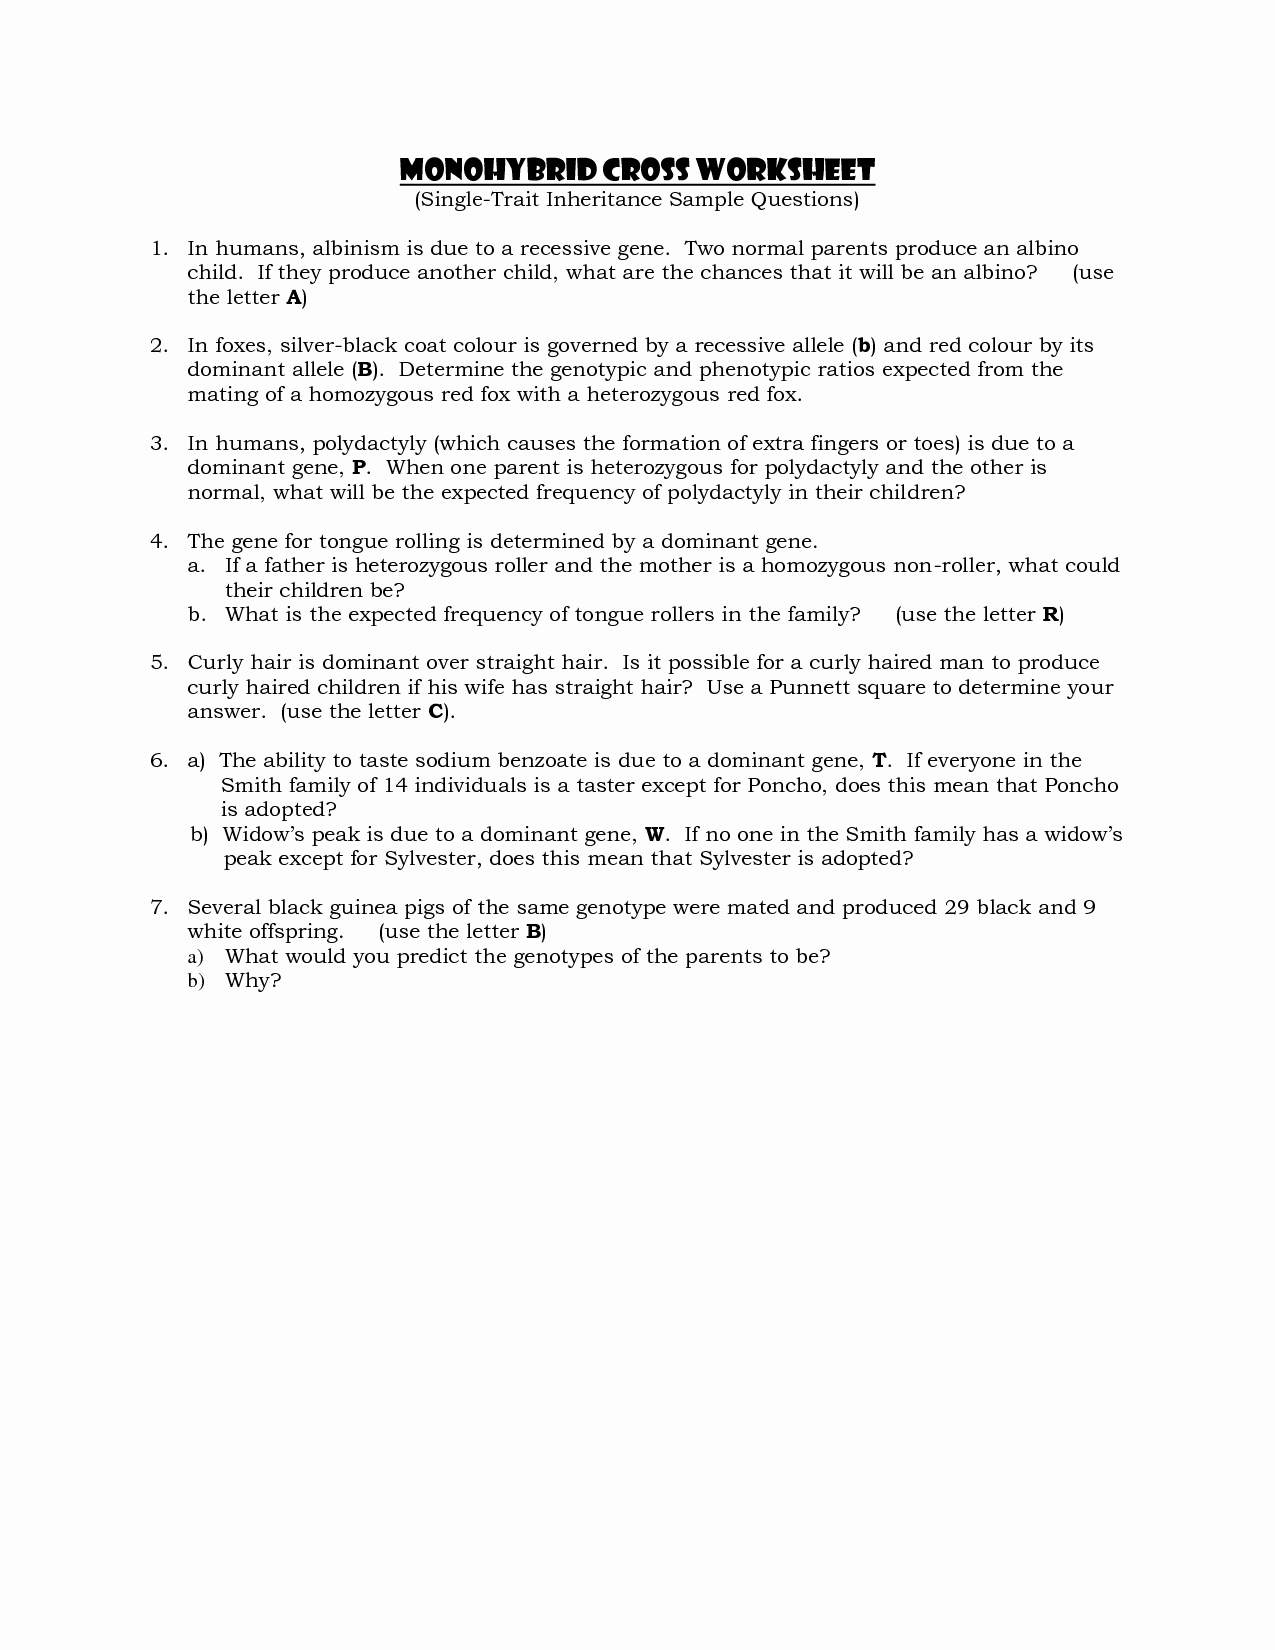 Monohybrid Cross Worksheet Answers Lovely 14 Best Of Monohybrid Cross Worksheet Answer Key